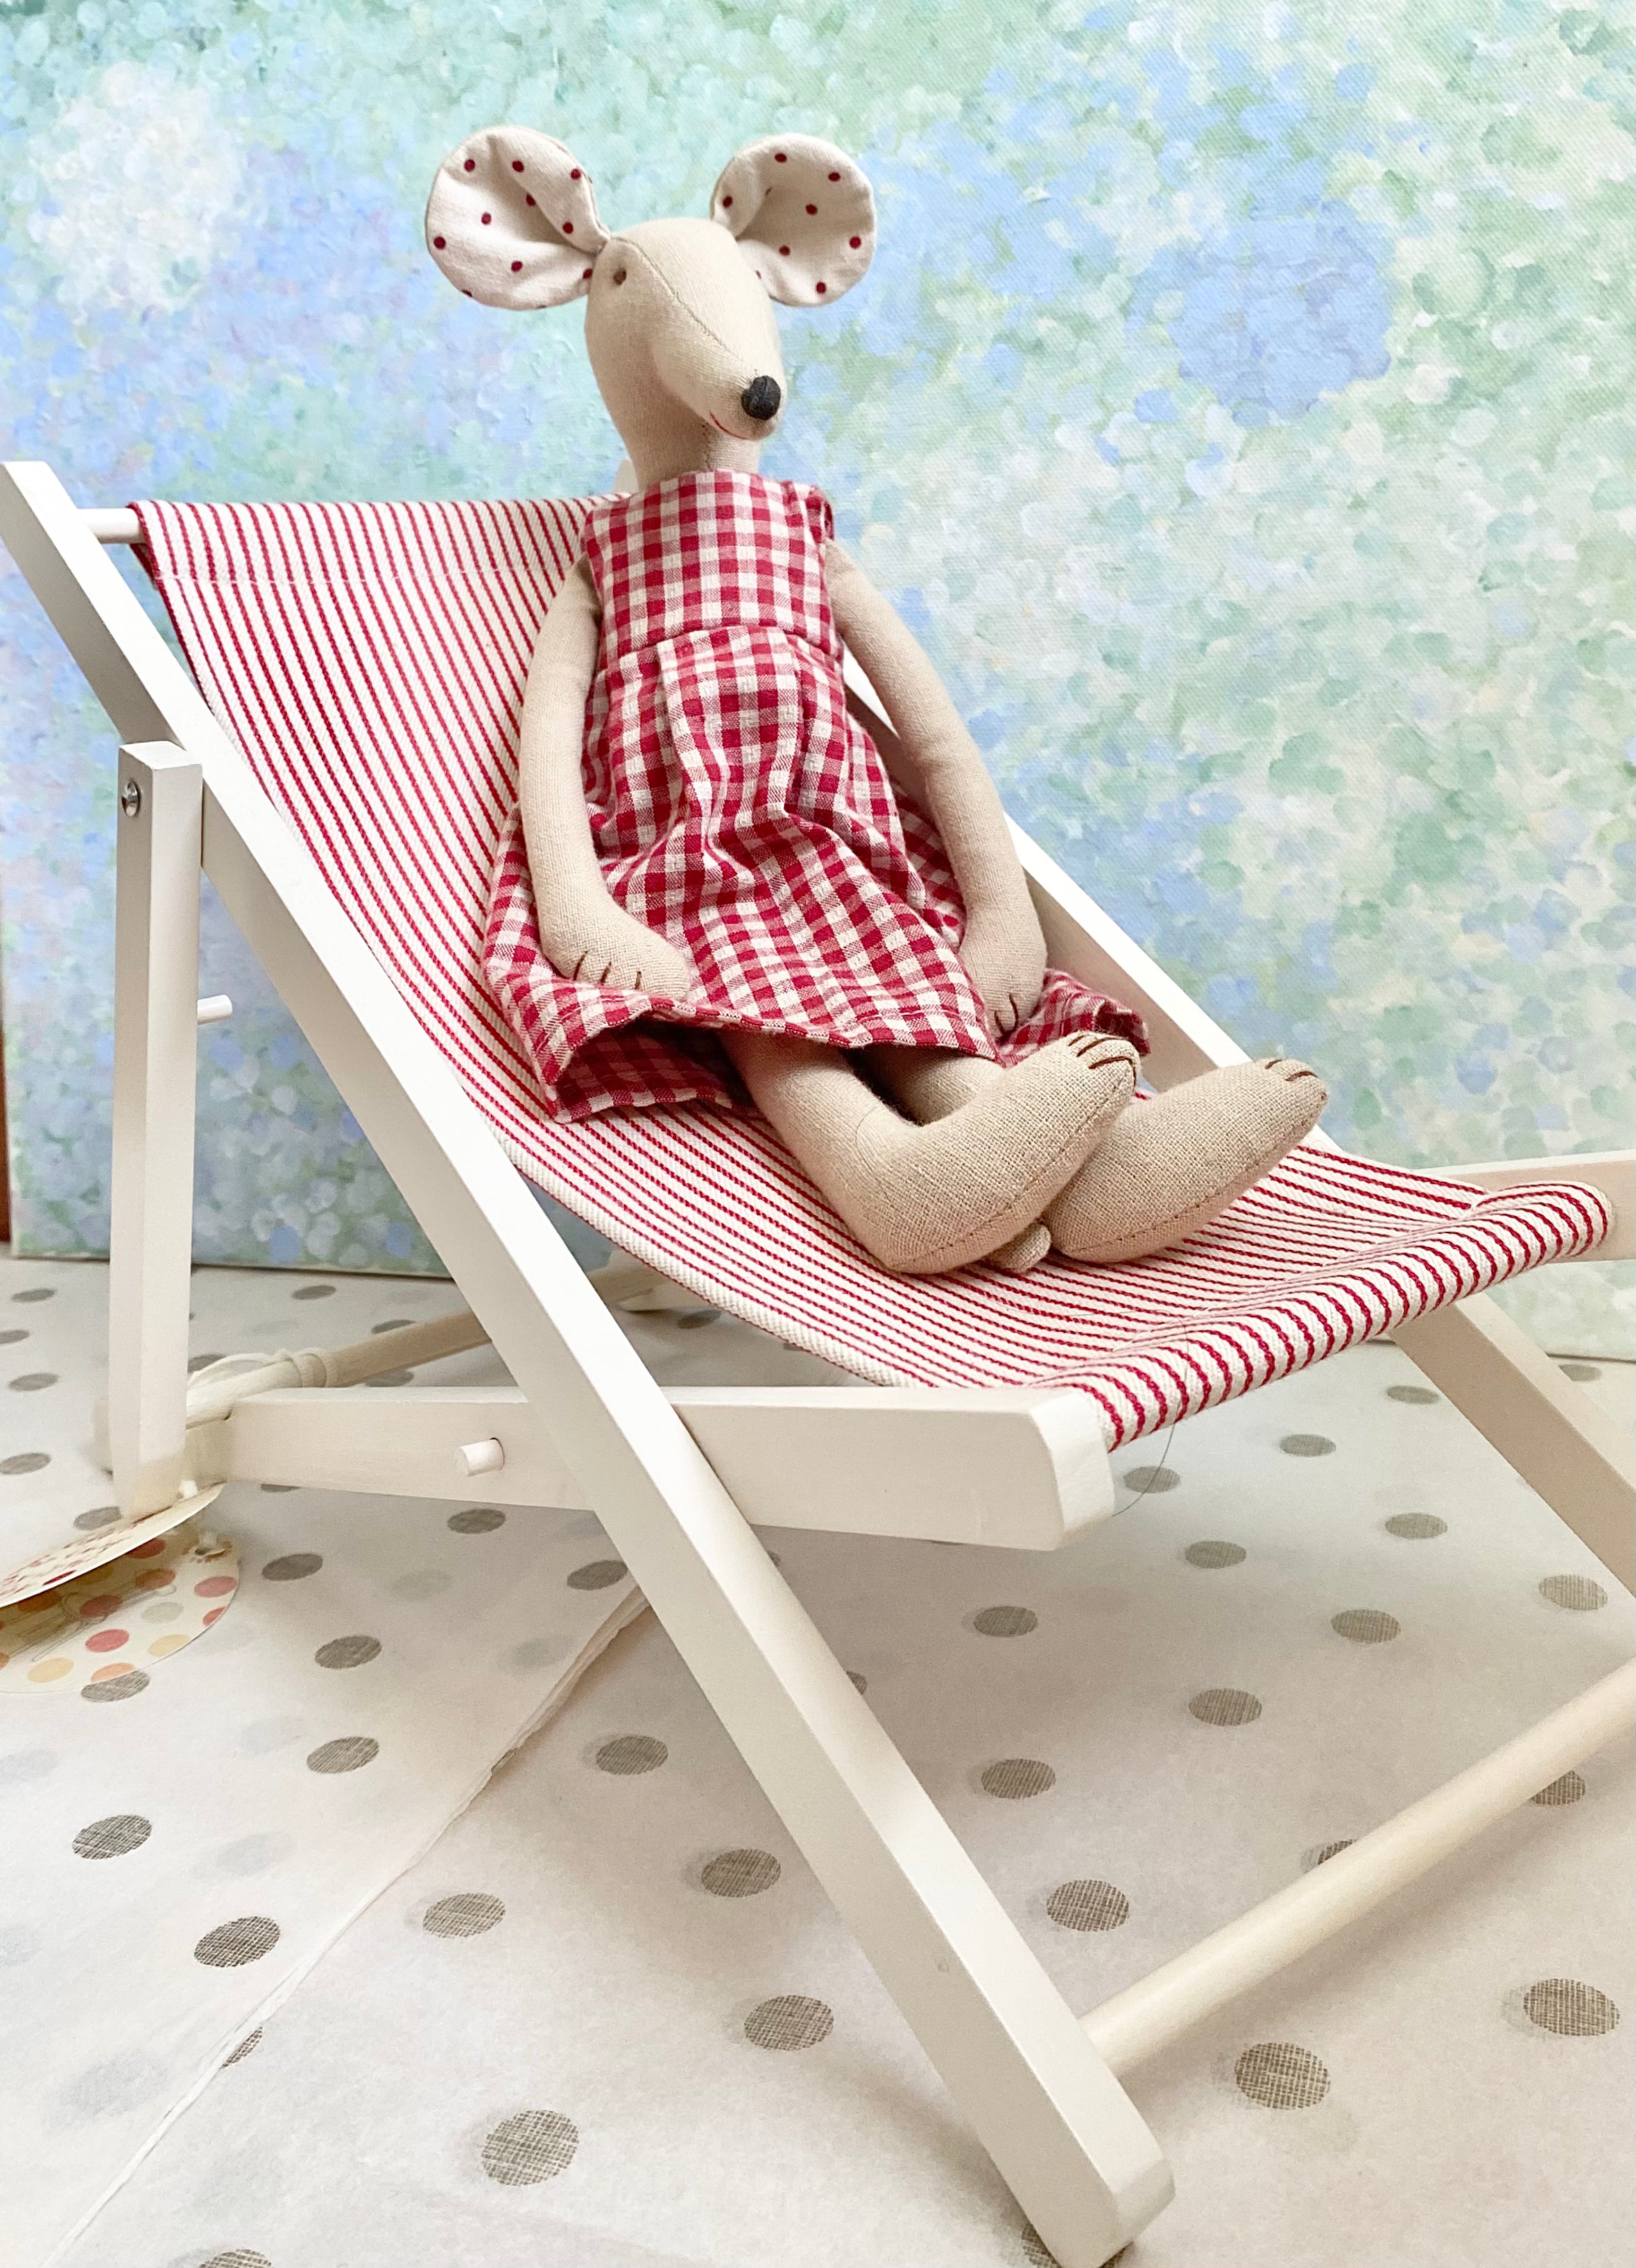 Beach Chair - 2013